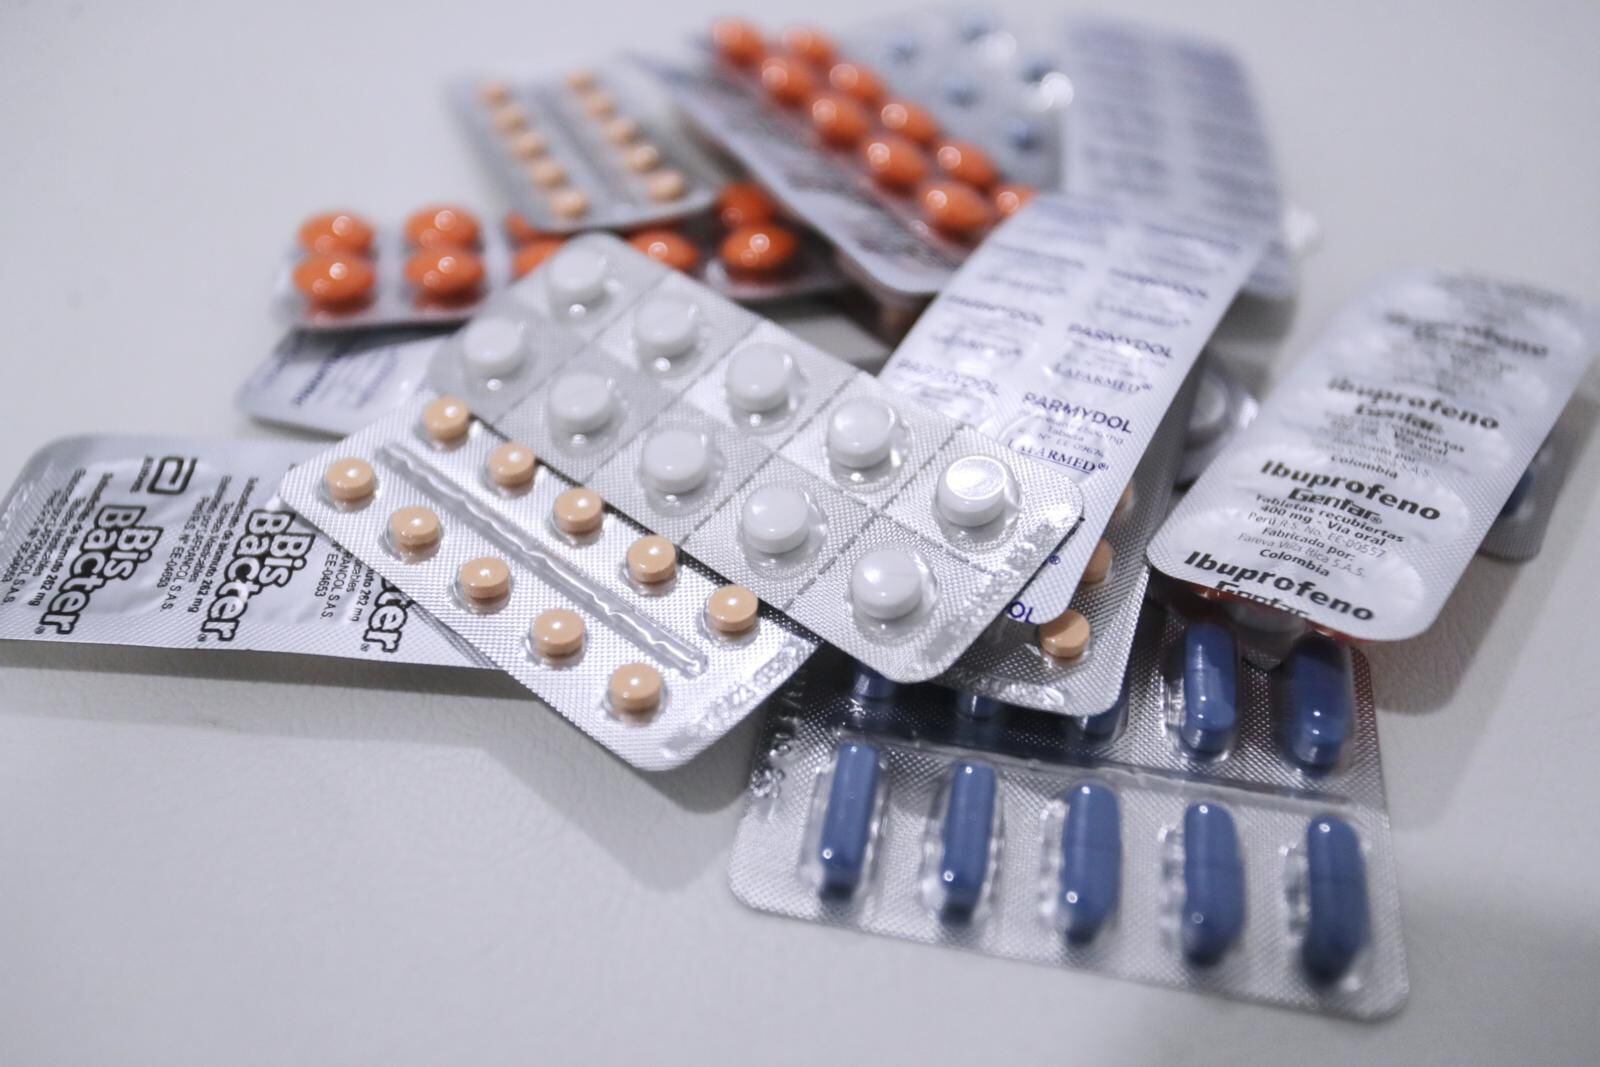 A inicios de abril el Ministerio de Salud aprobó lista de 434 medicinas genéricas para la venta en farmacias y boticas del país. (Foto: Alessandro Currarino)